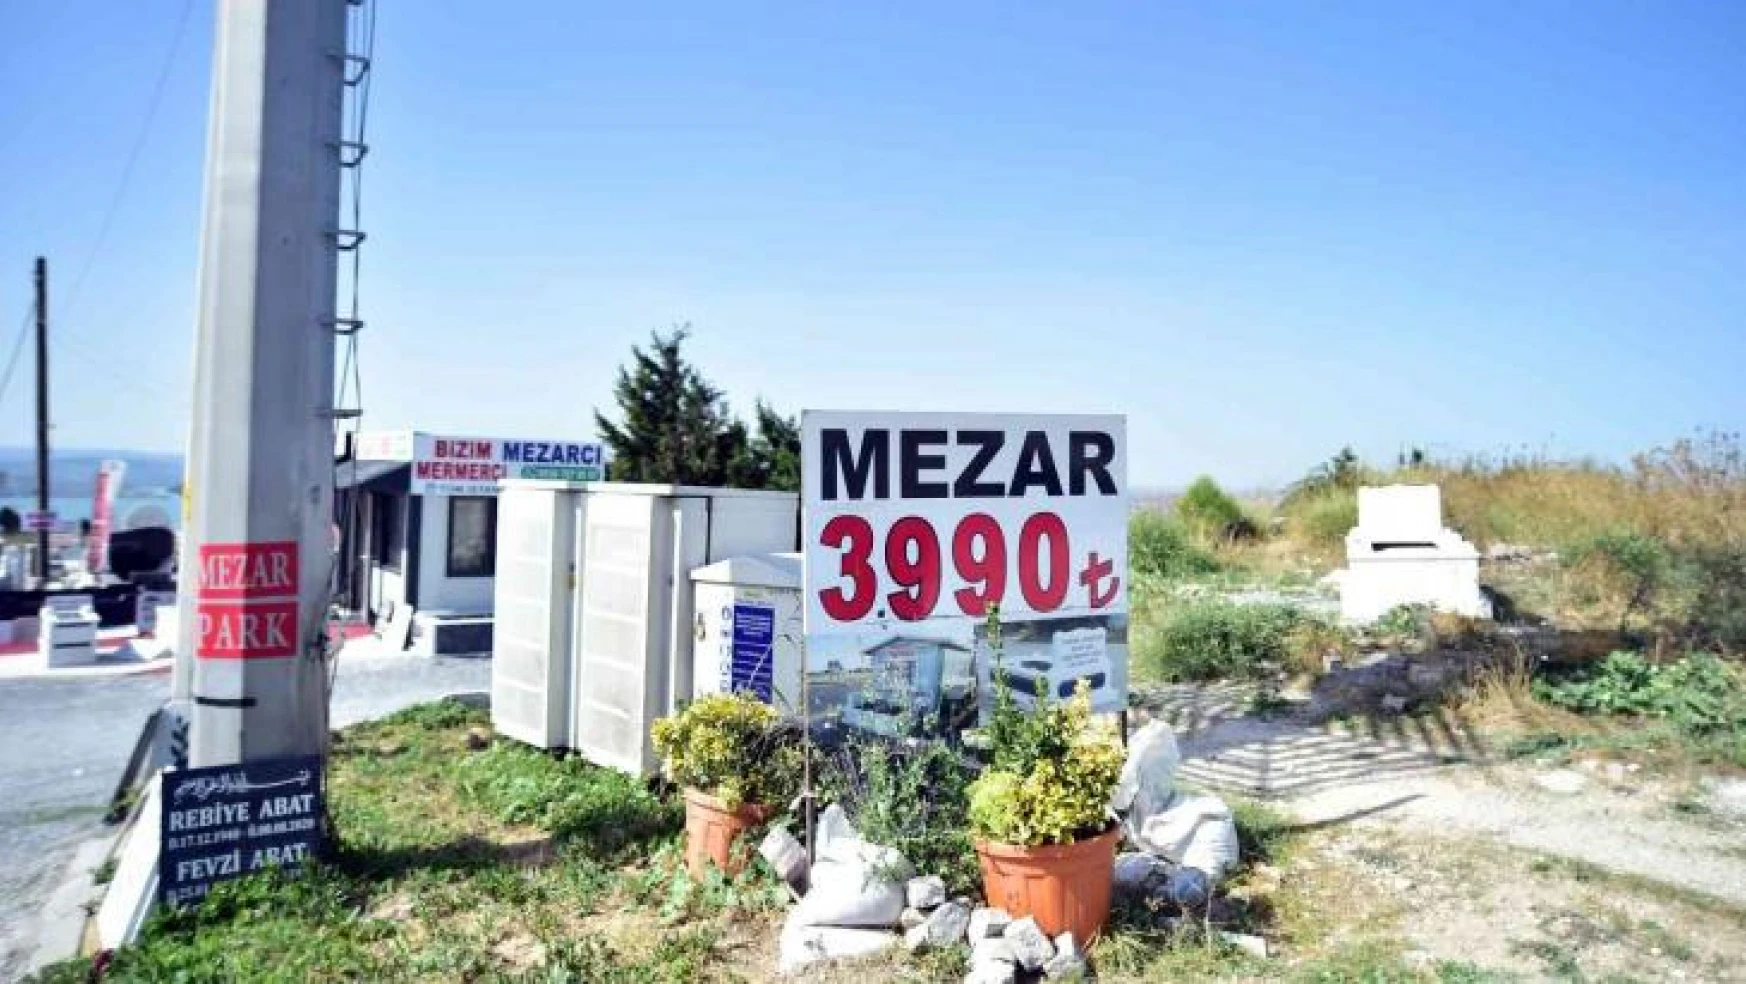 Mezar maliyetleri arttı, en düşük mezar taşı 500 lira